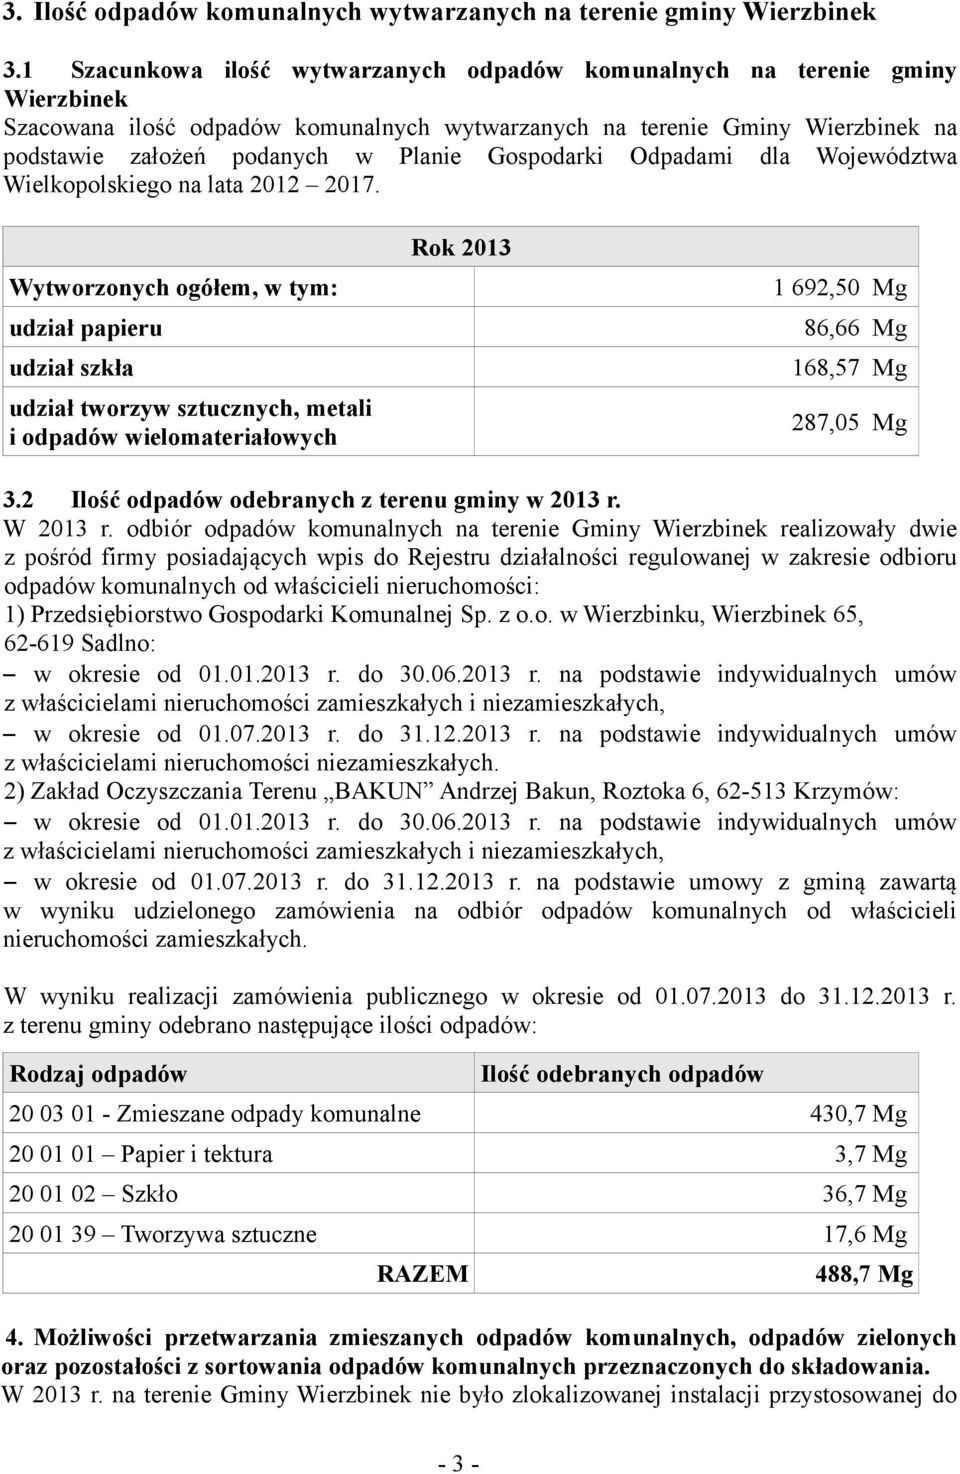 Gospodarki Odpadami dla Województwa Wielkopolskiego na lata 2012 2017.